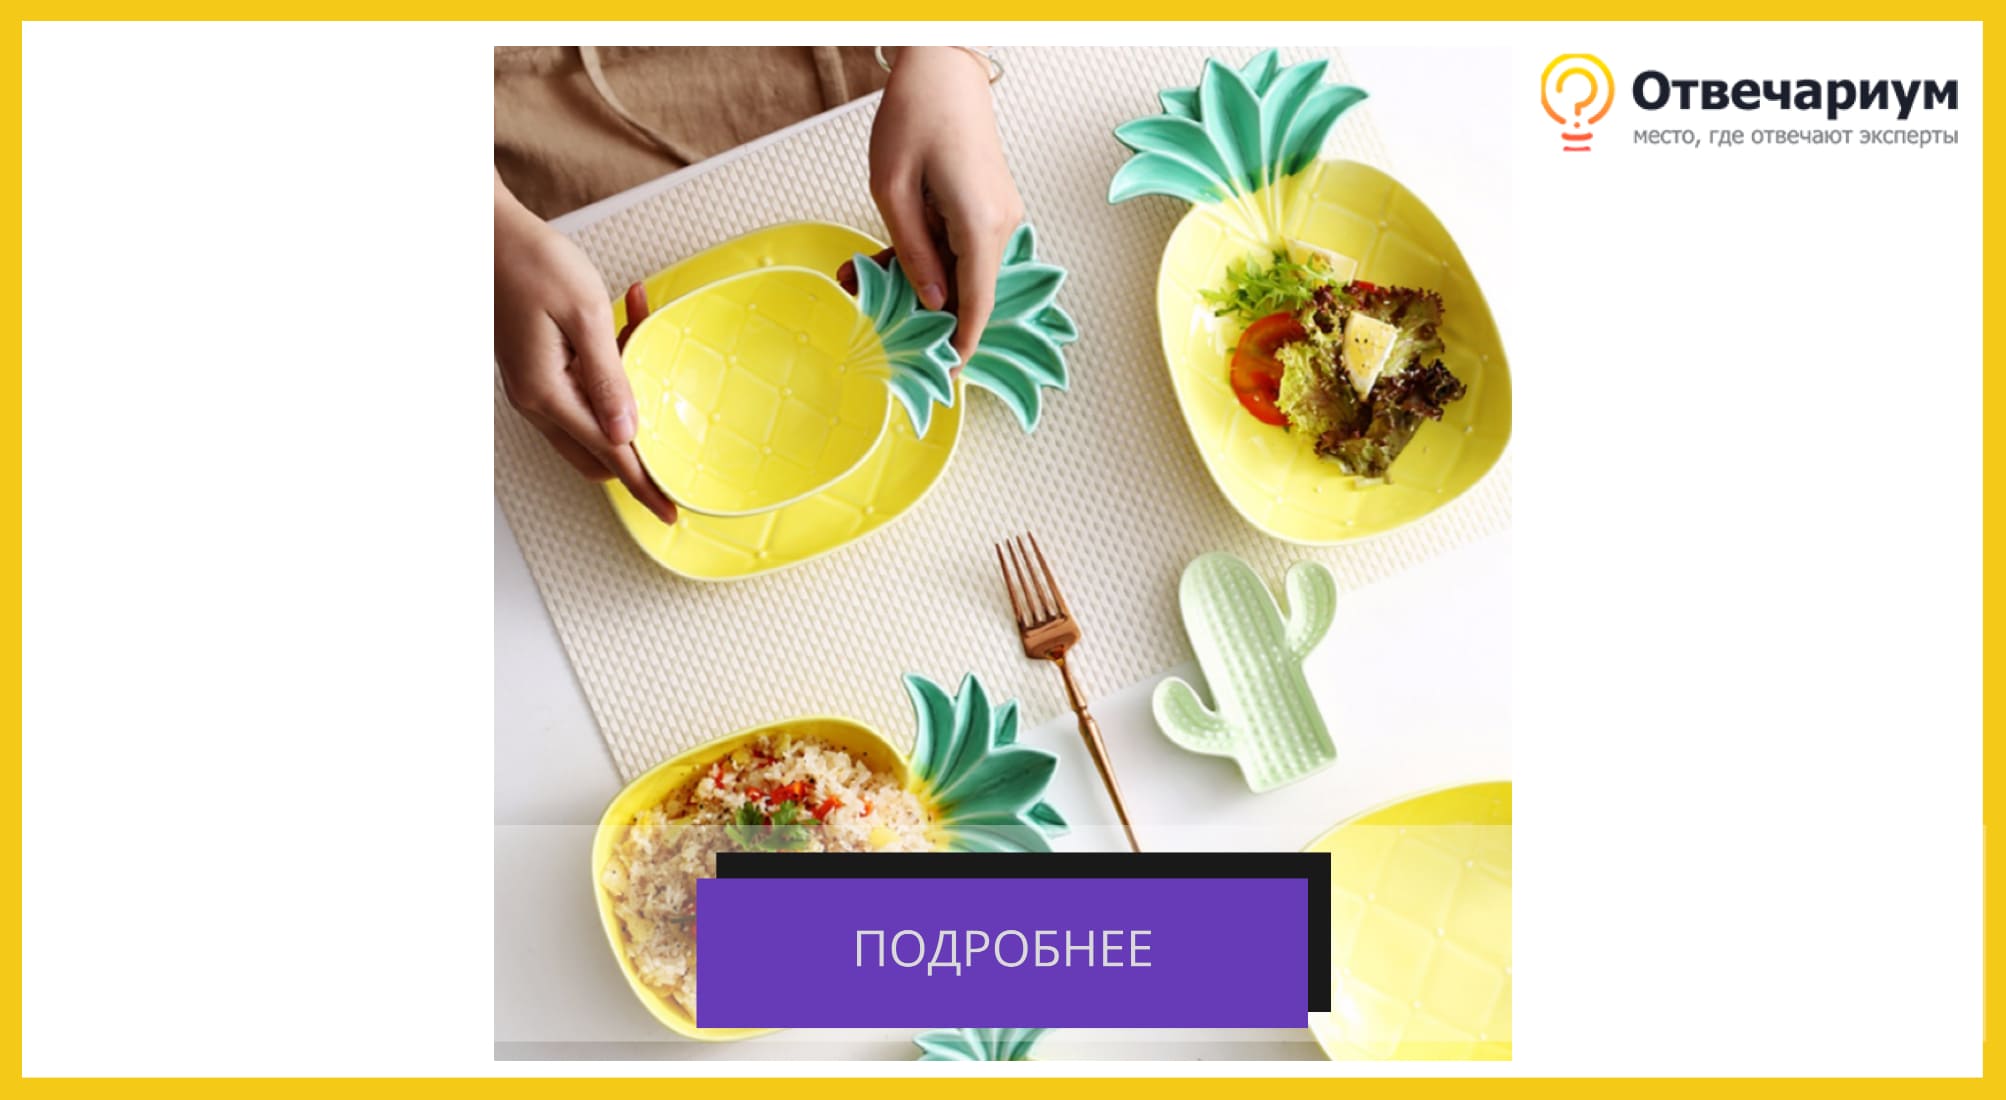 Набор посуды в виде ананасов и кактусов, которая стоит на столе.